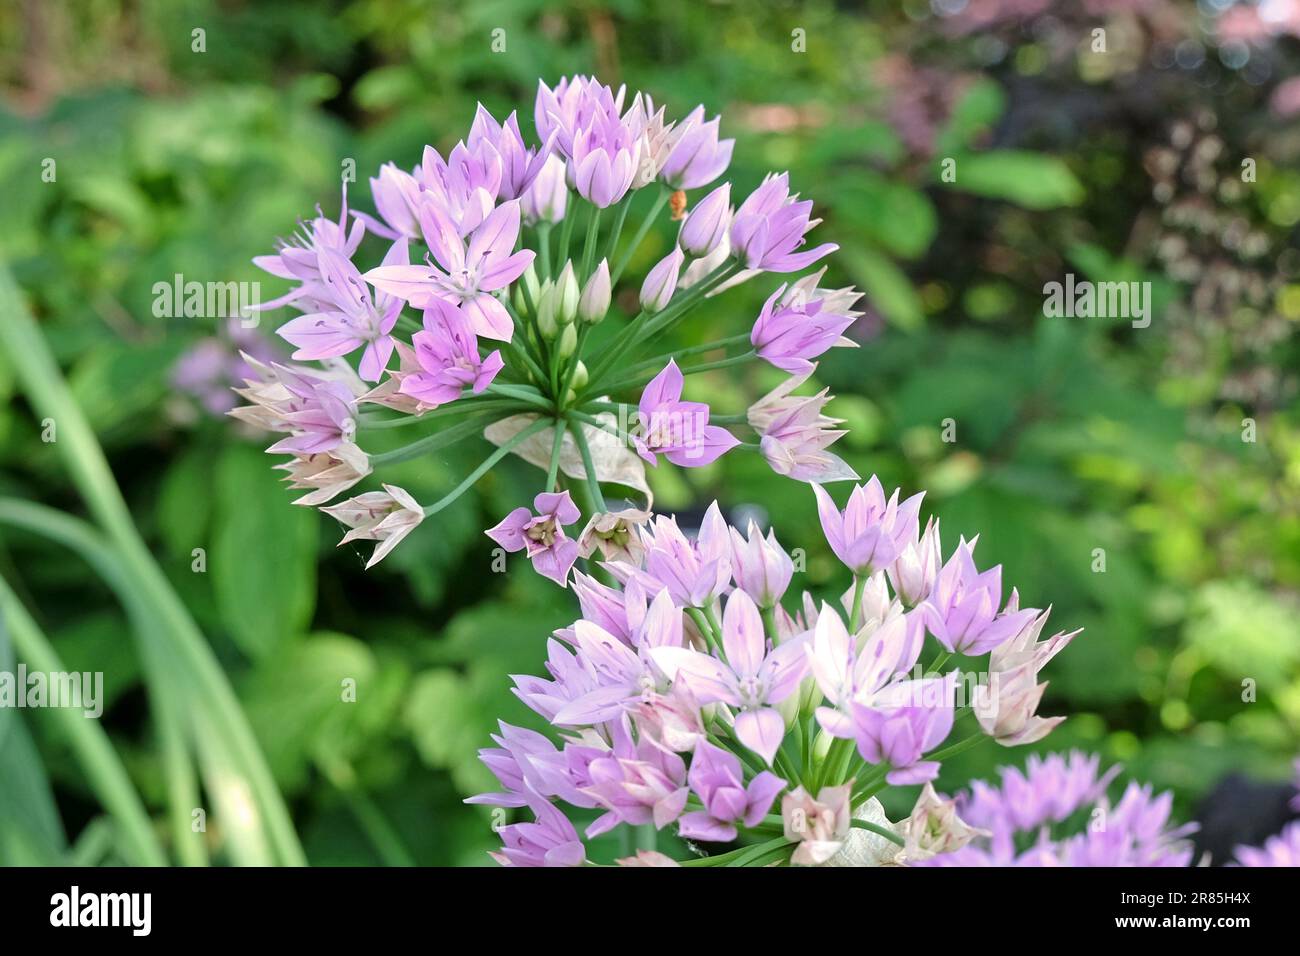 Allium unifolium 'Eros' in flower. Stock Photo